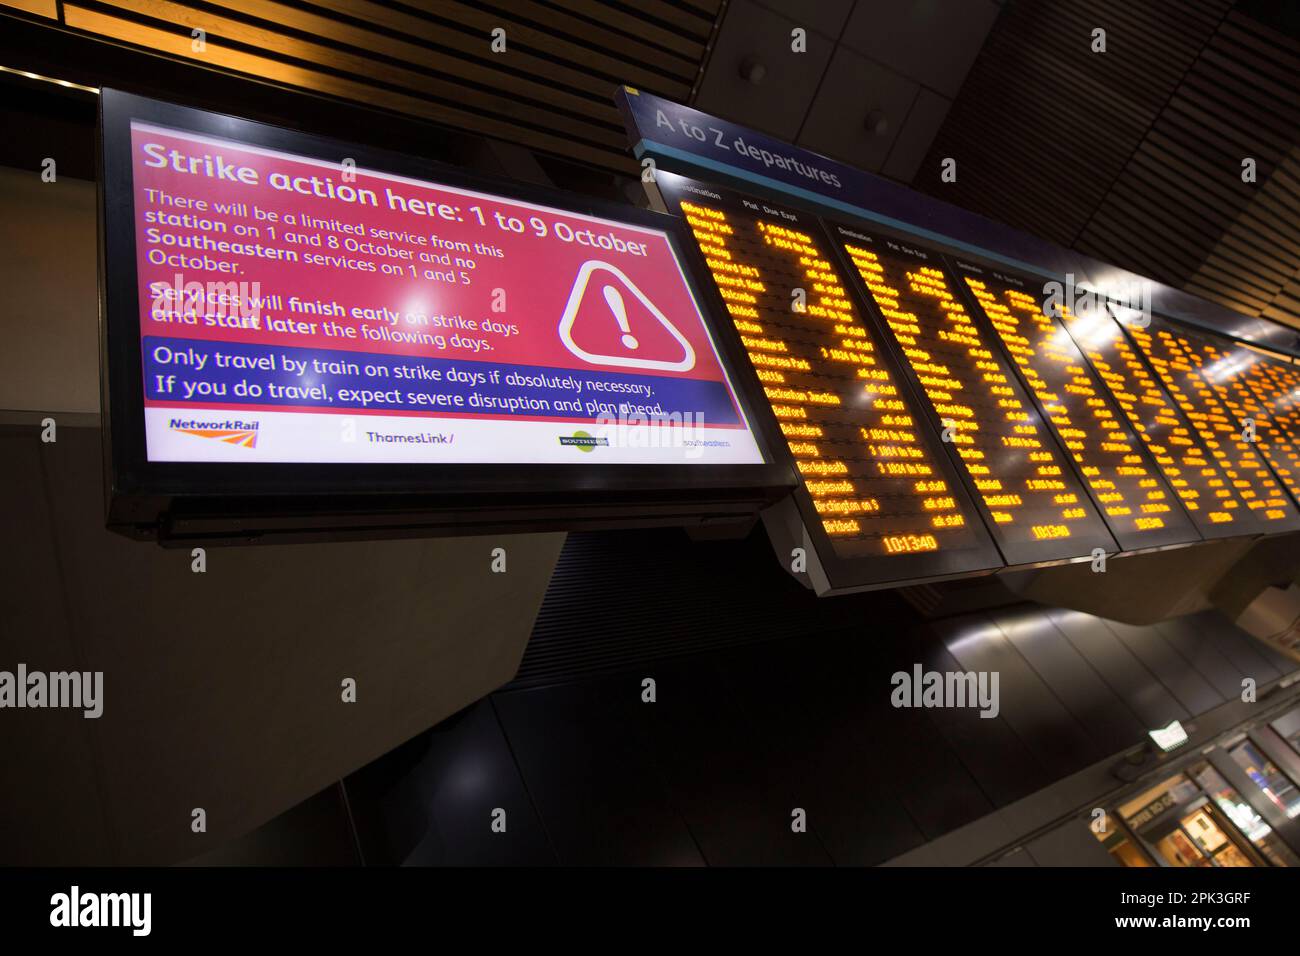 Am Londoner Bahnhof London Bridge ist ein elektrischer Fahrplan zu sehen, während die Bahnarbeiter streiken. Stockfoto